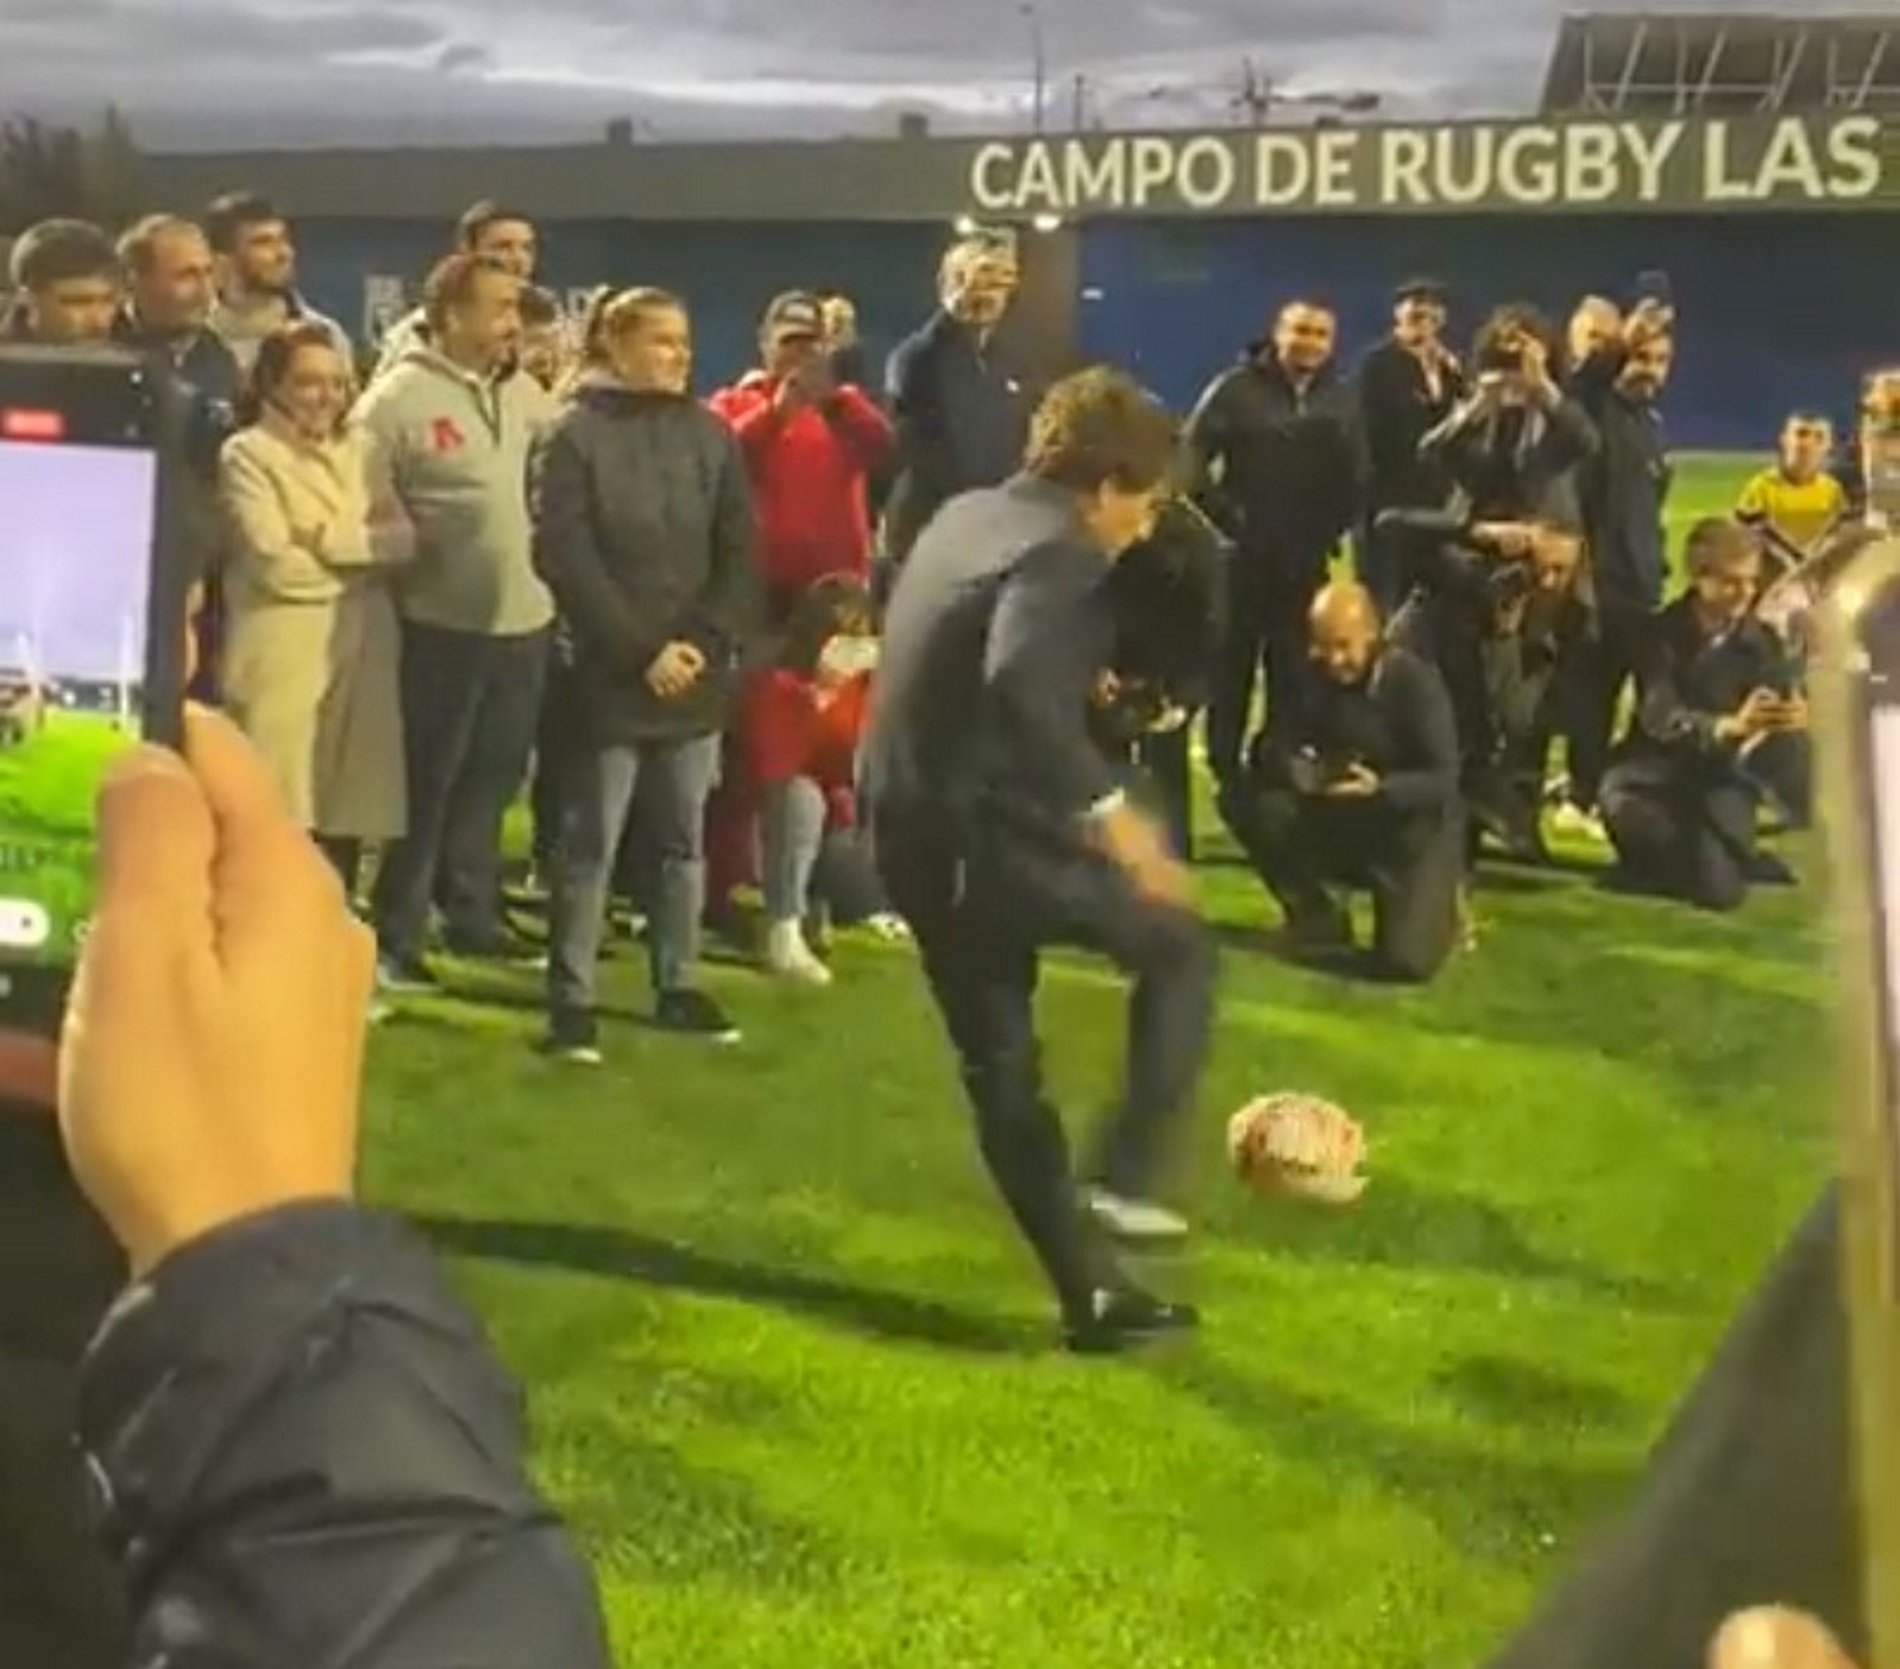 Almeida lo vuelve a hacer, balonazo a un fotógrafo en la inauguración de un campo de rugby | VÍDEO